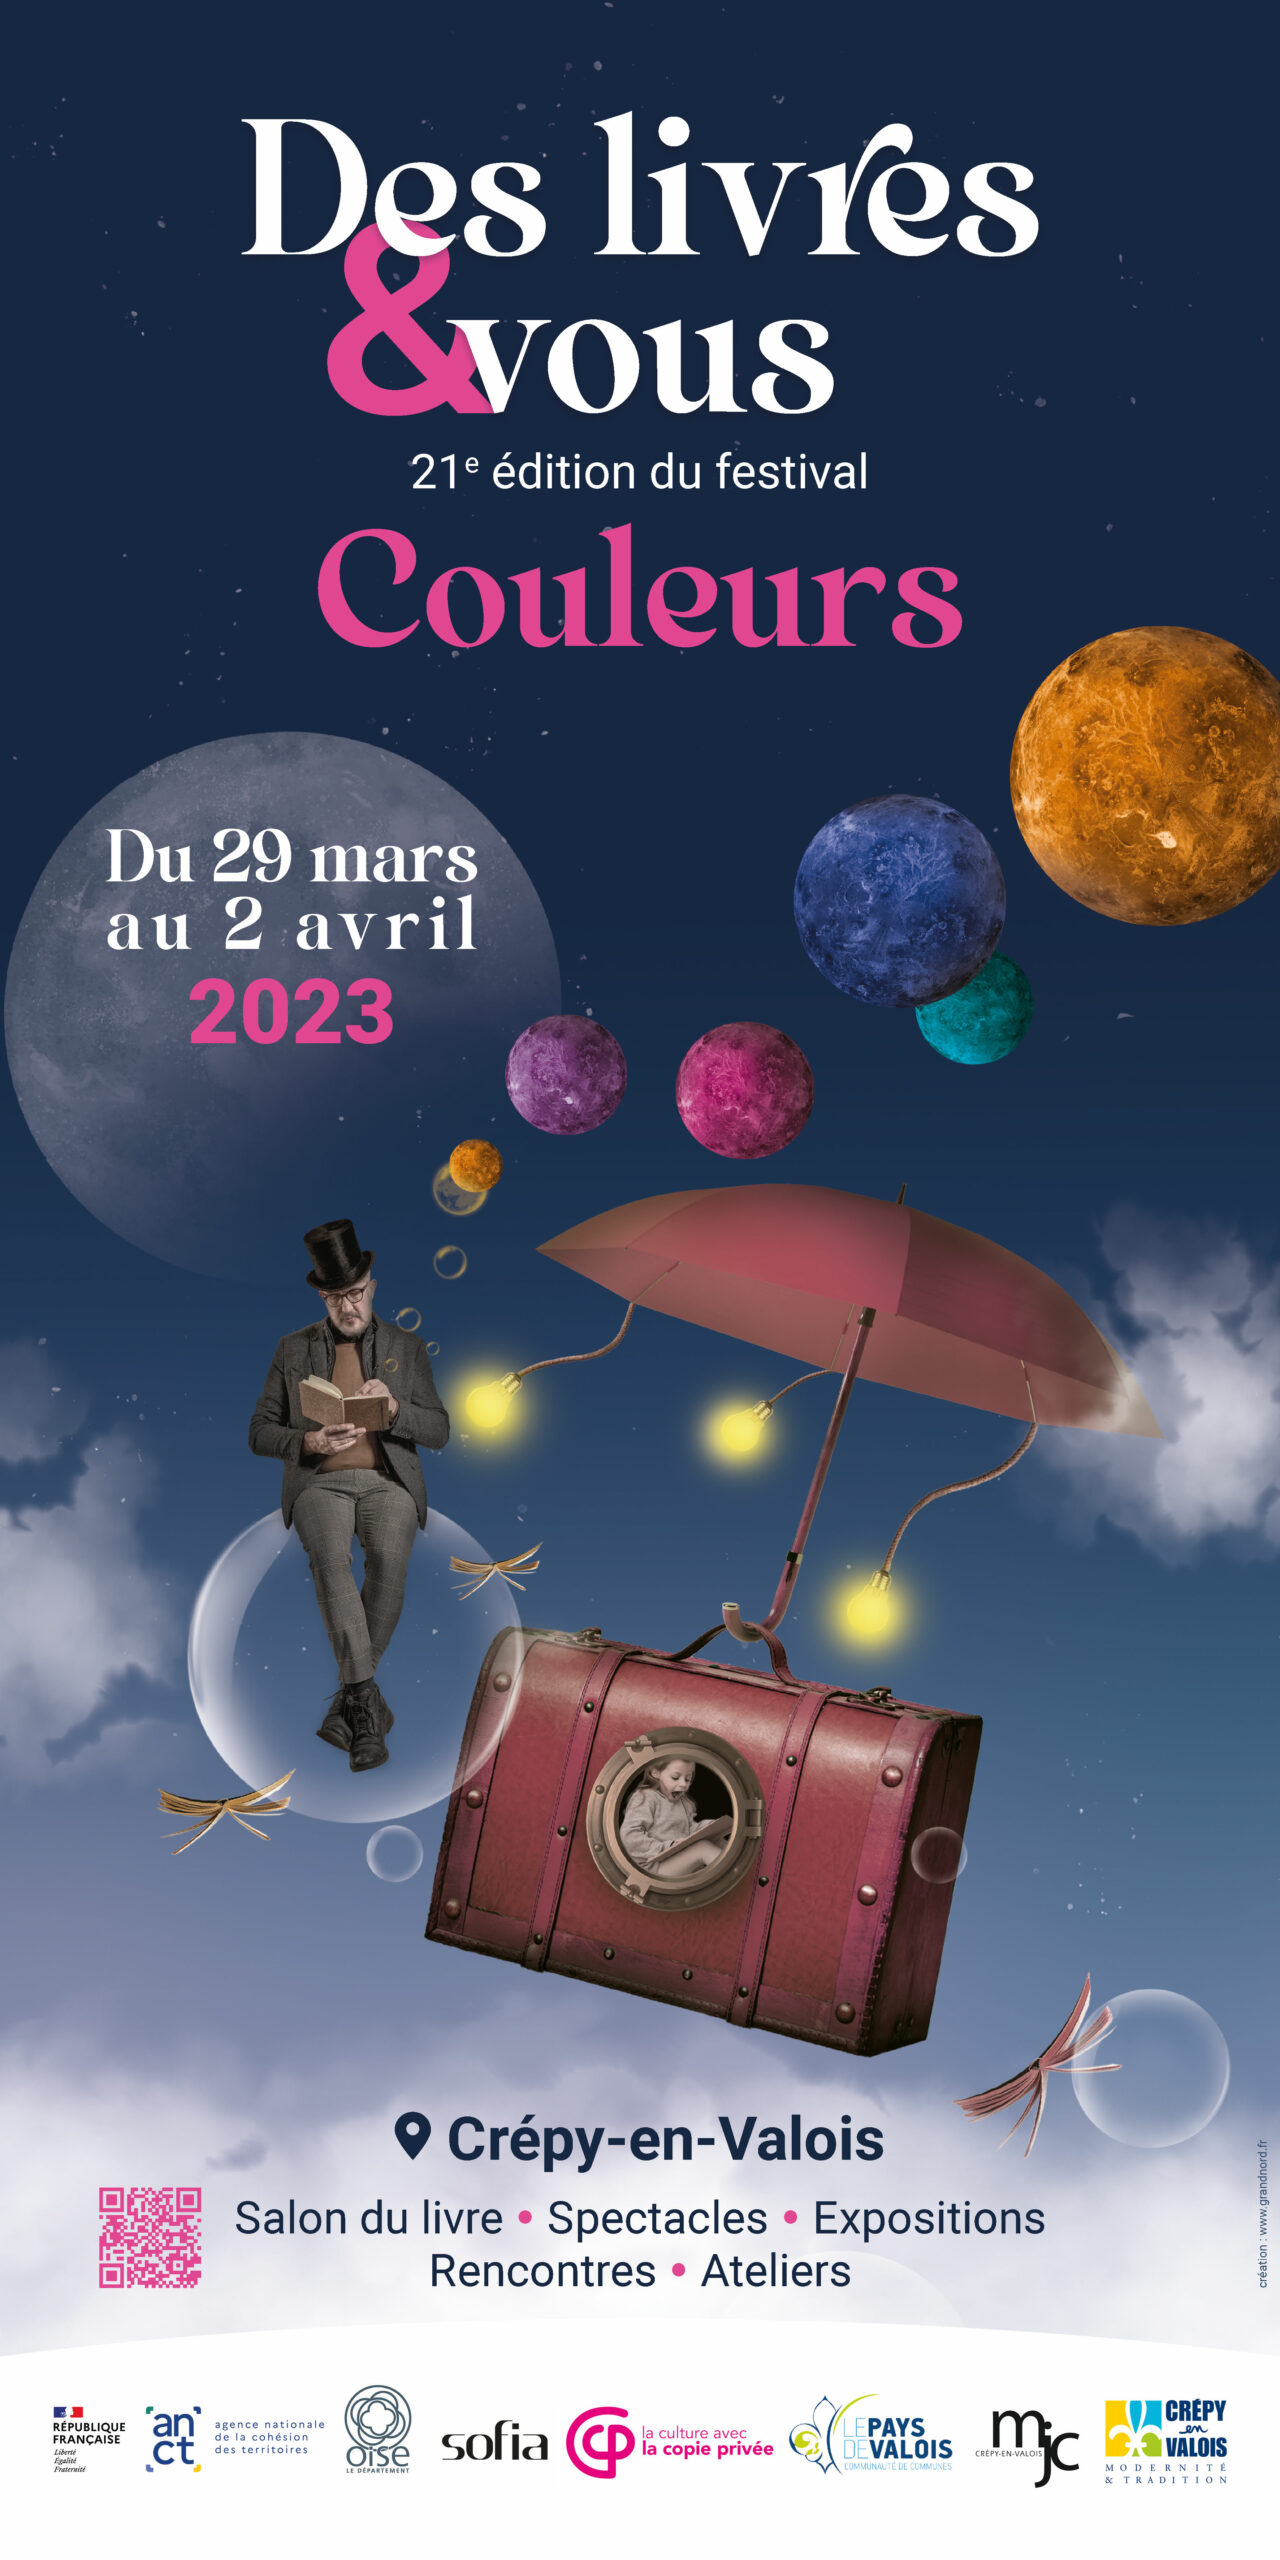 Livre : Agenda Pleine Vie 2024 : activités, rendez-vous, loisirs